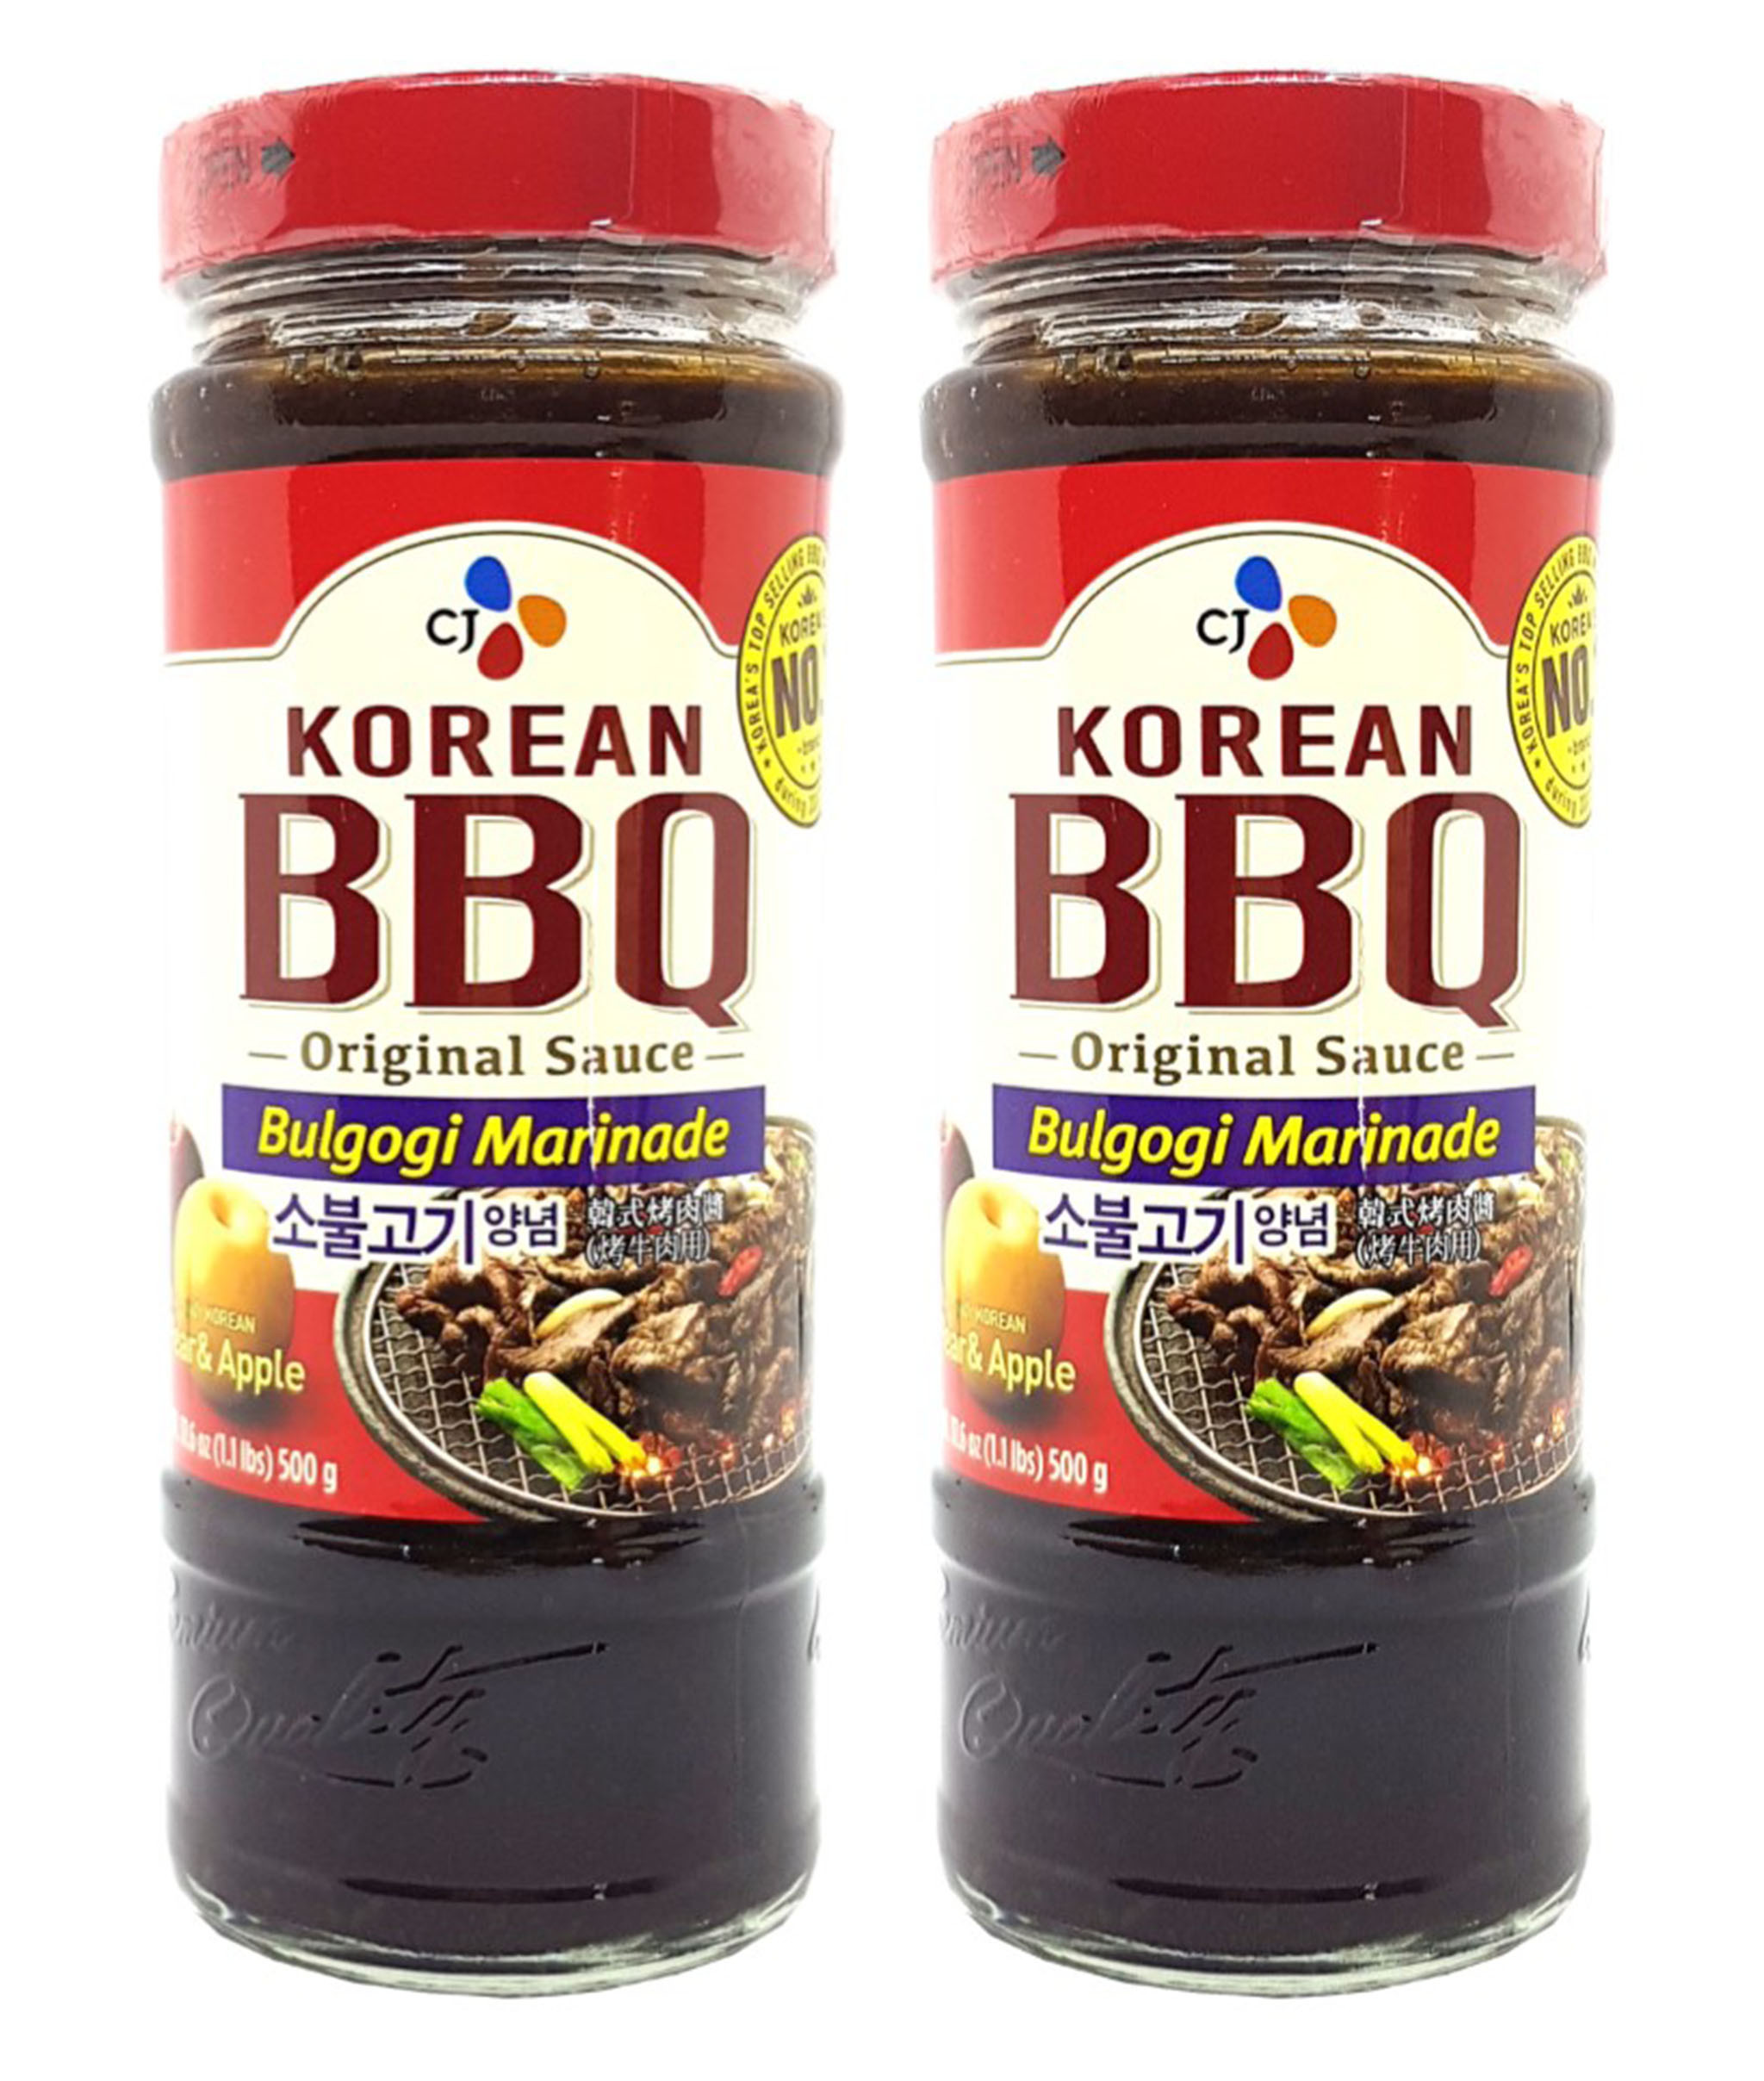 Korean Bbq Sauce New Cj Korean Bbq Sauce Bulgogi Marinade 16 9 Oz Pack Of 2